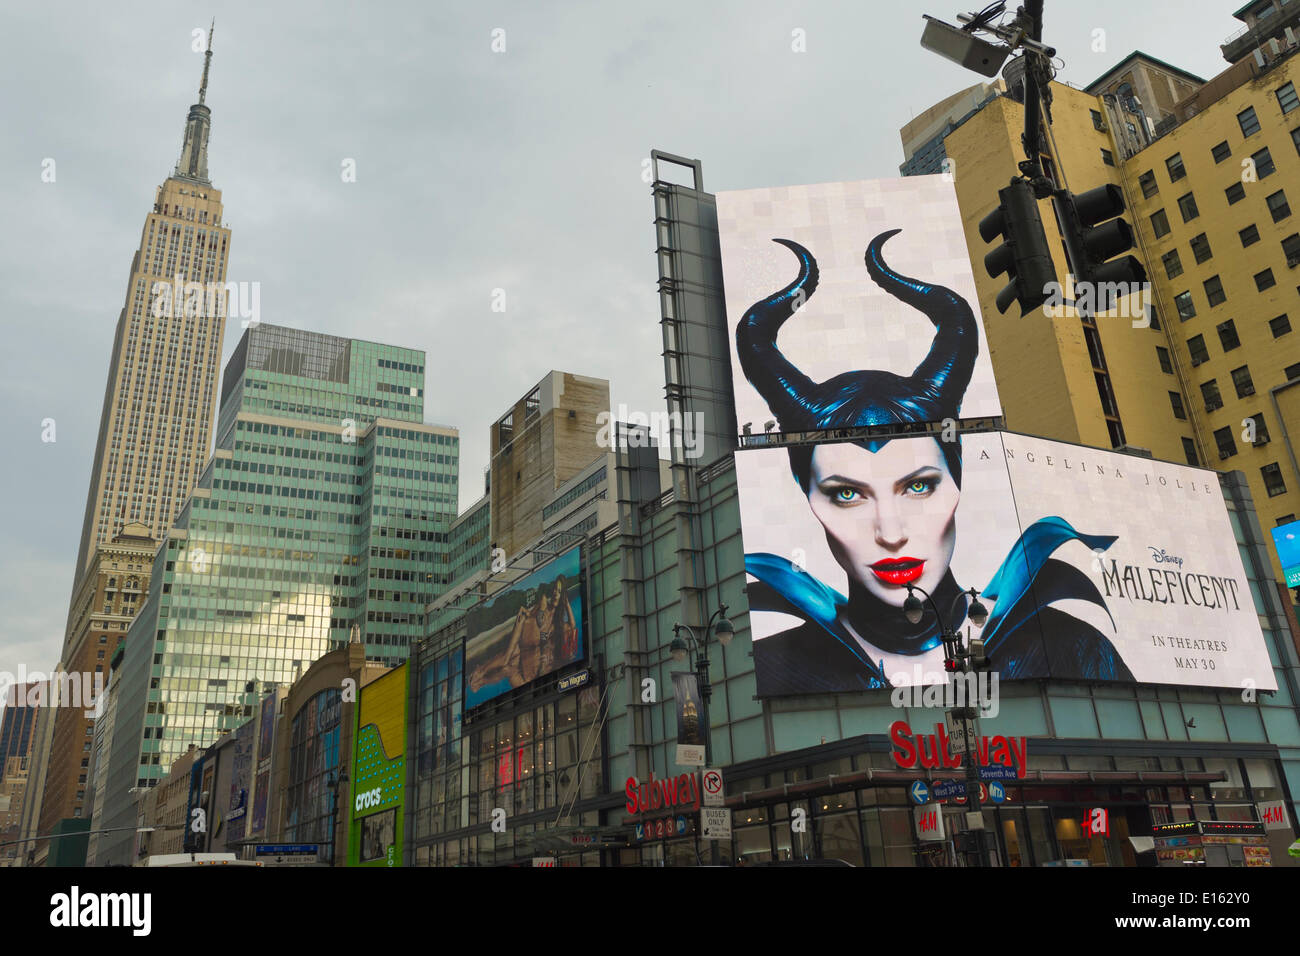 Manhattan, New York, USA - 21. Mai 2014 - A großen Overhead Plakatwand an der 7th Avenue wirbt kommenden Disneyfilm Malefiz, starring Schauspielerin Angelina Jolie mit Empire State Building auf der linken Seite im Hintergrund, während ein angenehmer Frühlingstag in Manhattan. Stockfoto